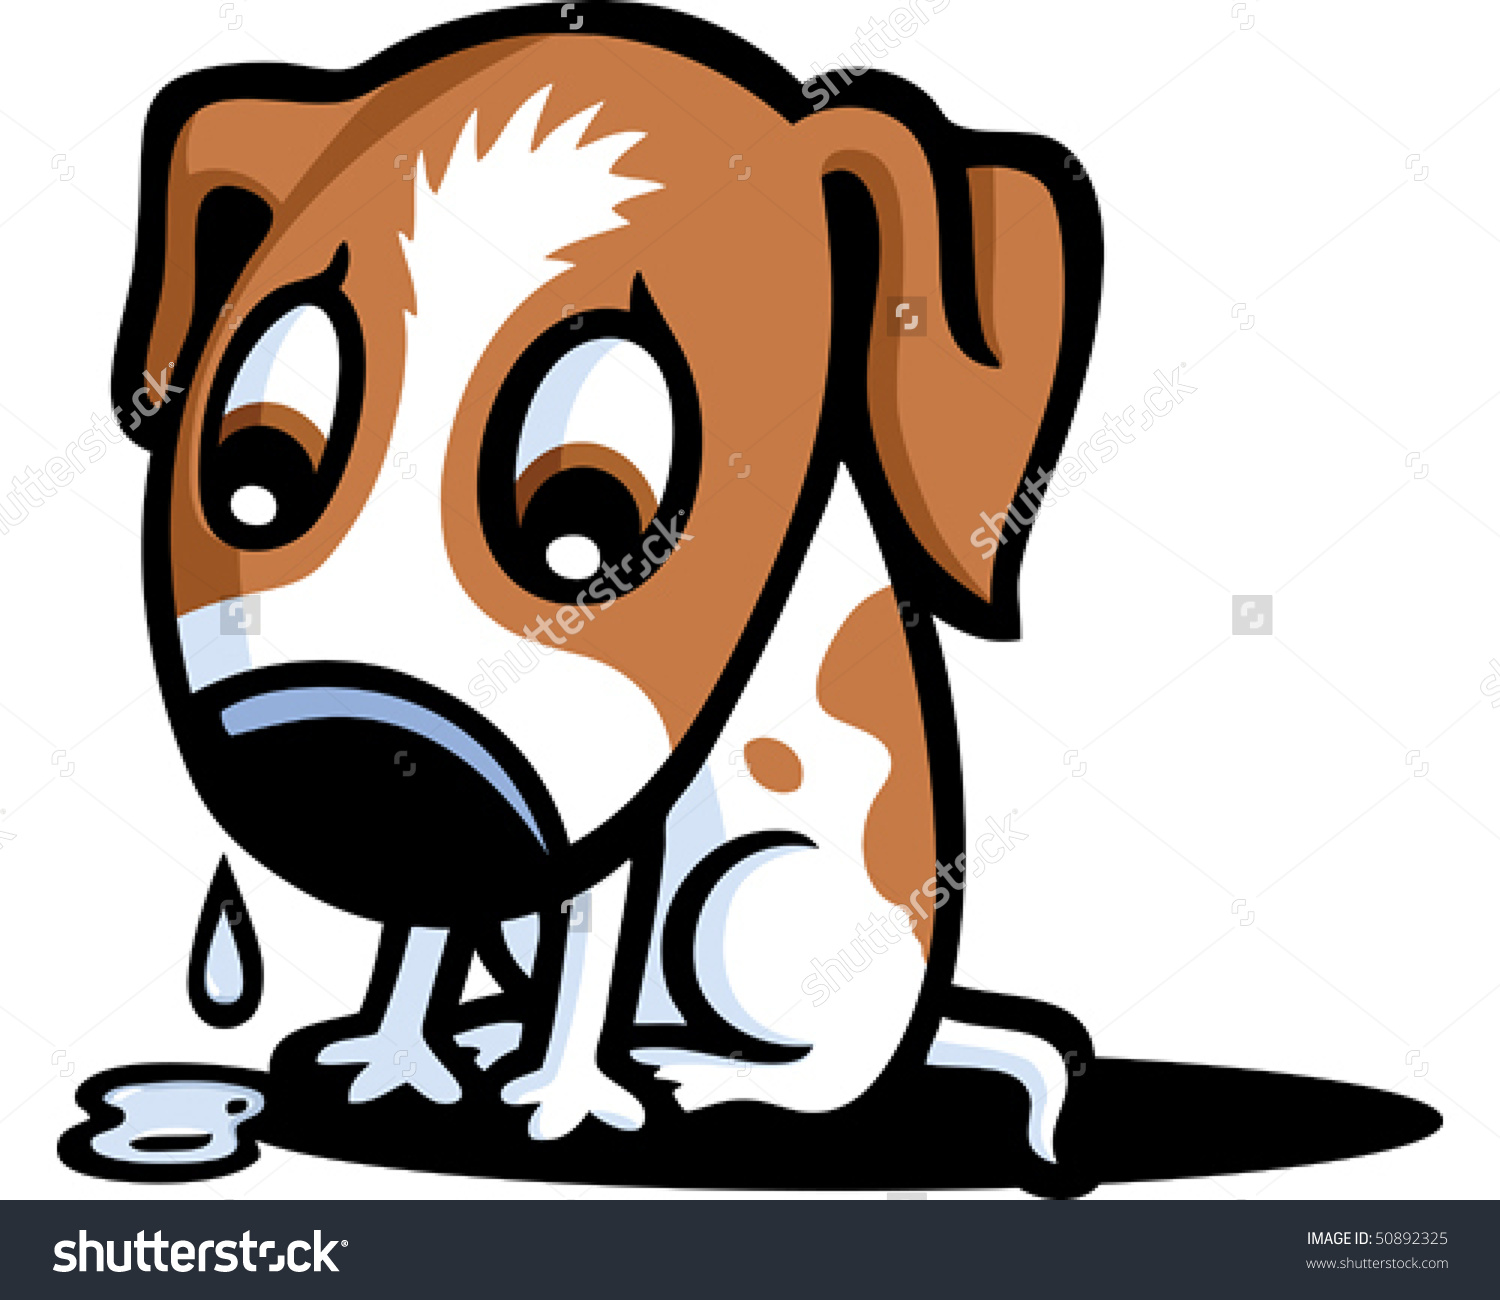 Sad Dog Stock Photos Illustra